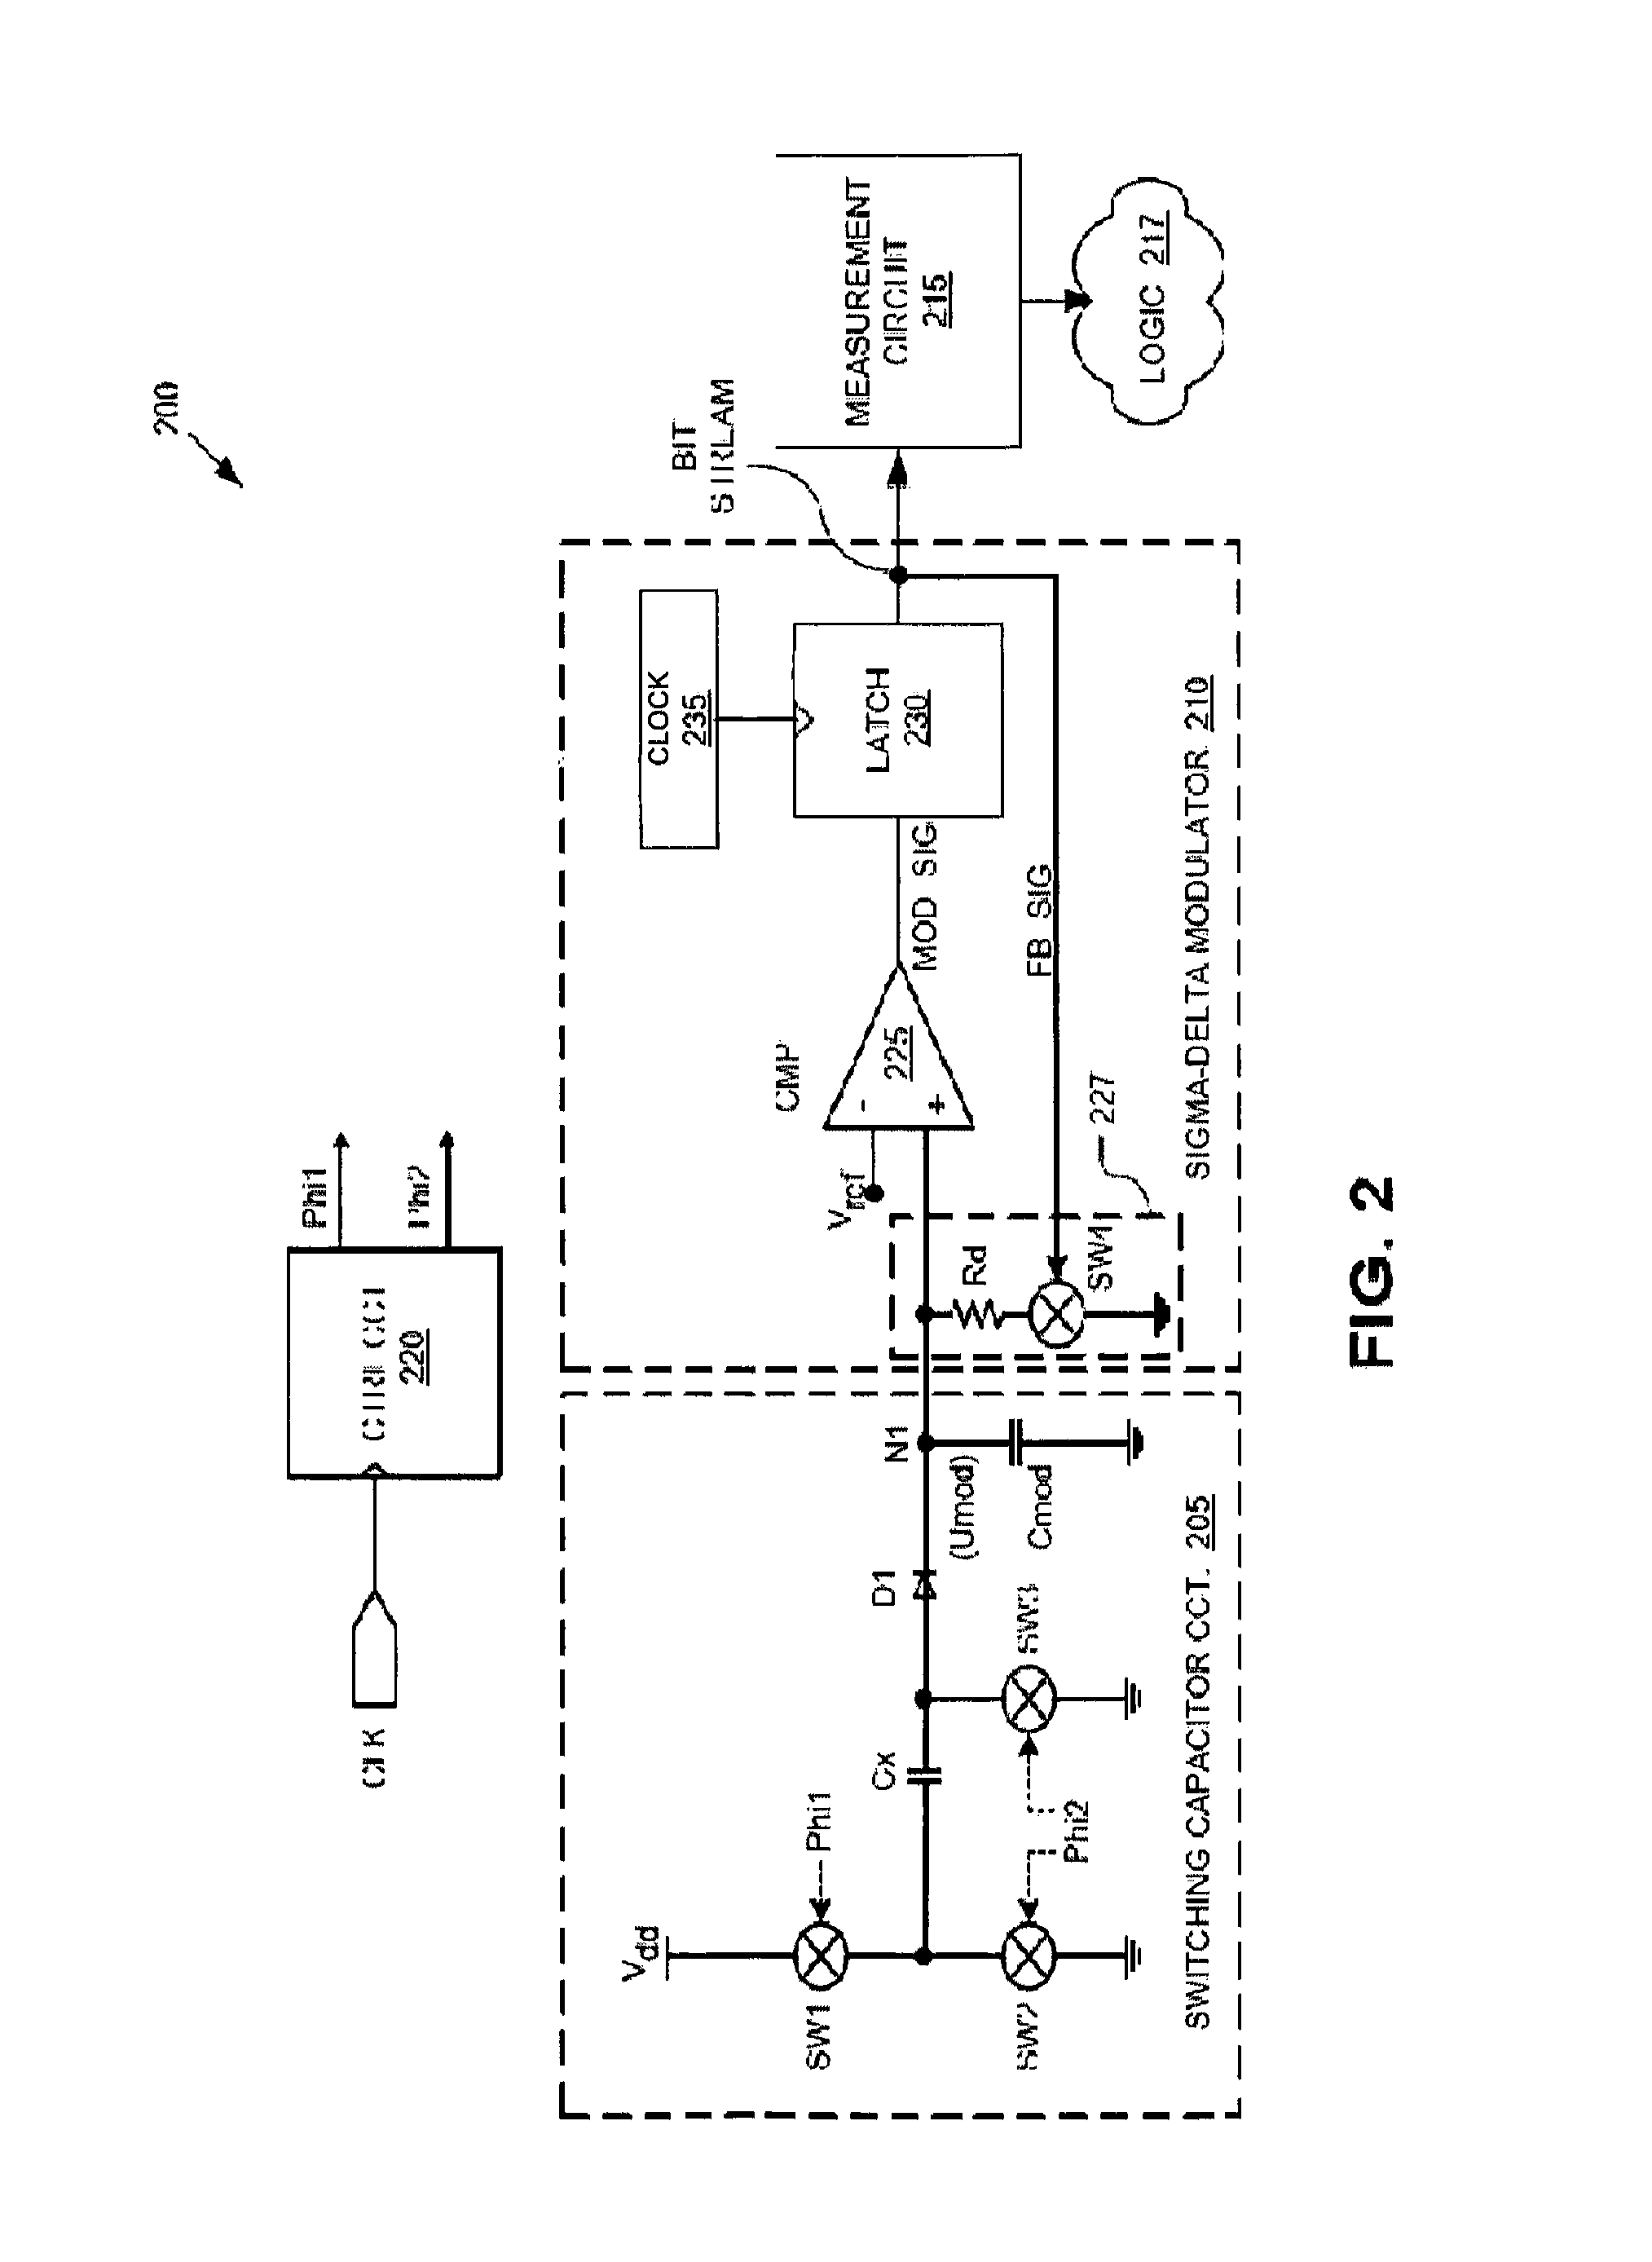 Capacitive field sensor with sigma-delta modulator